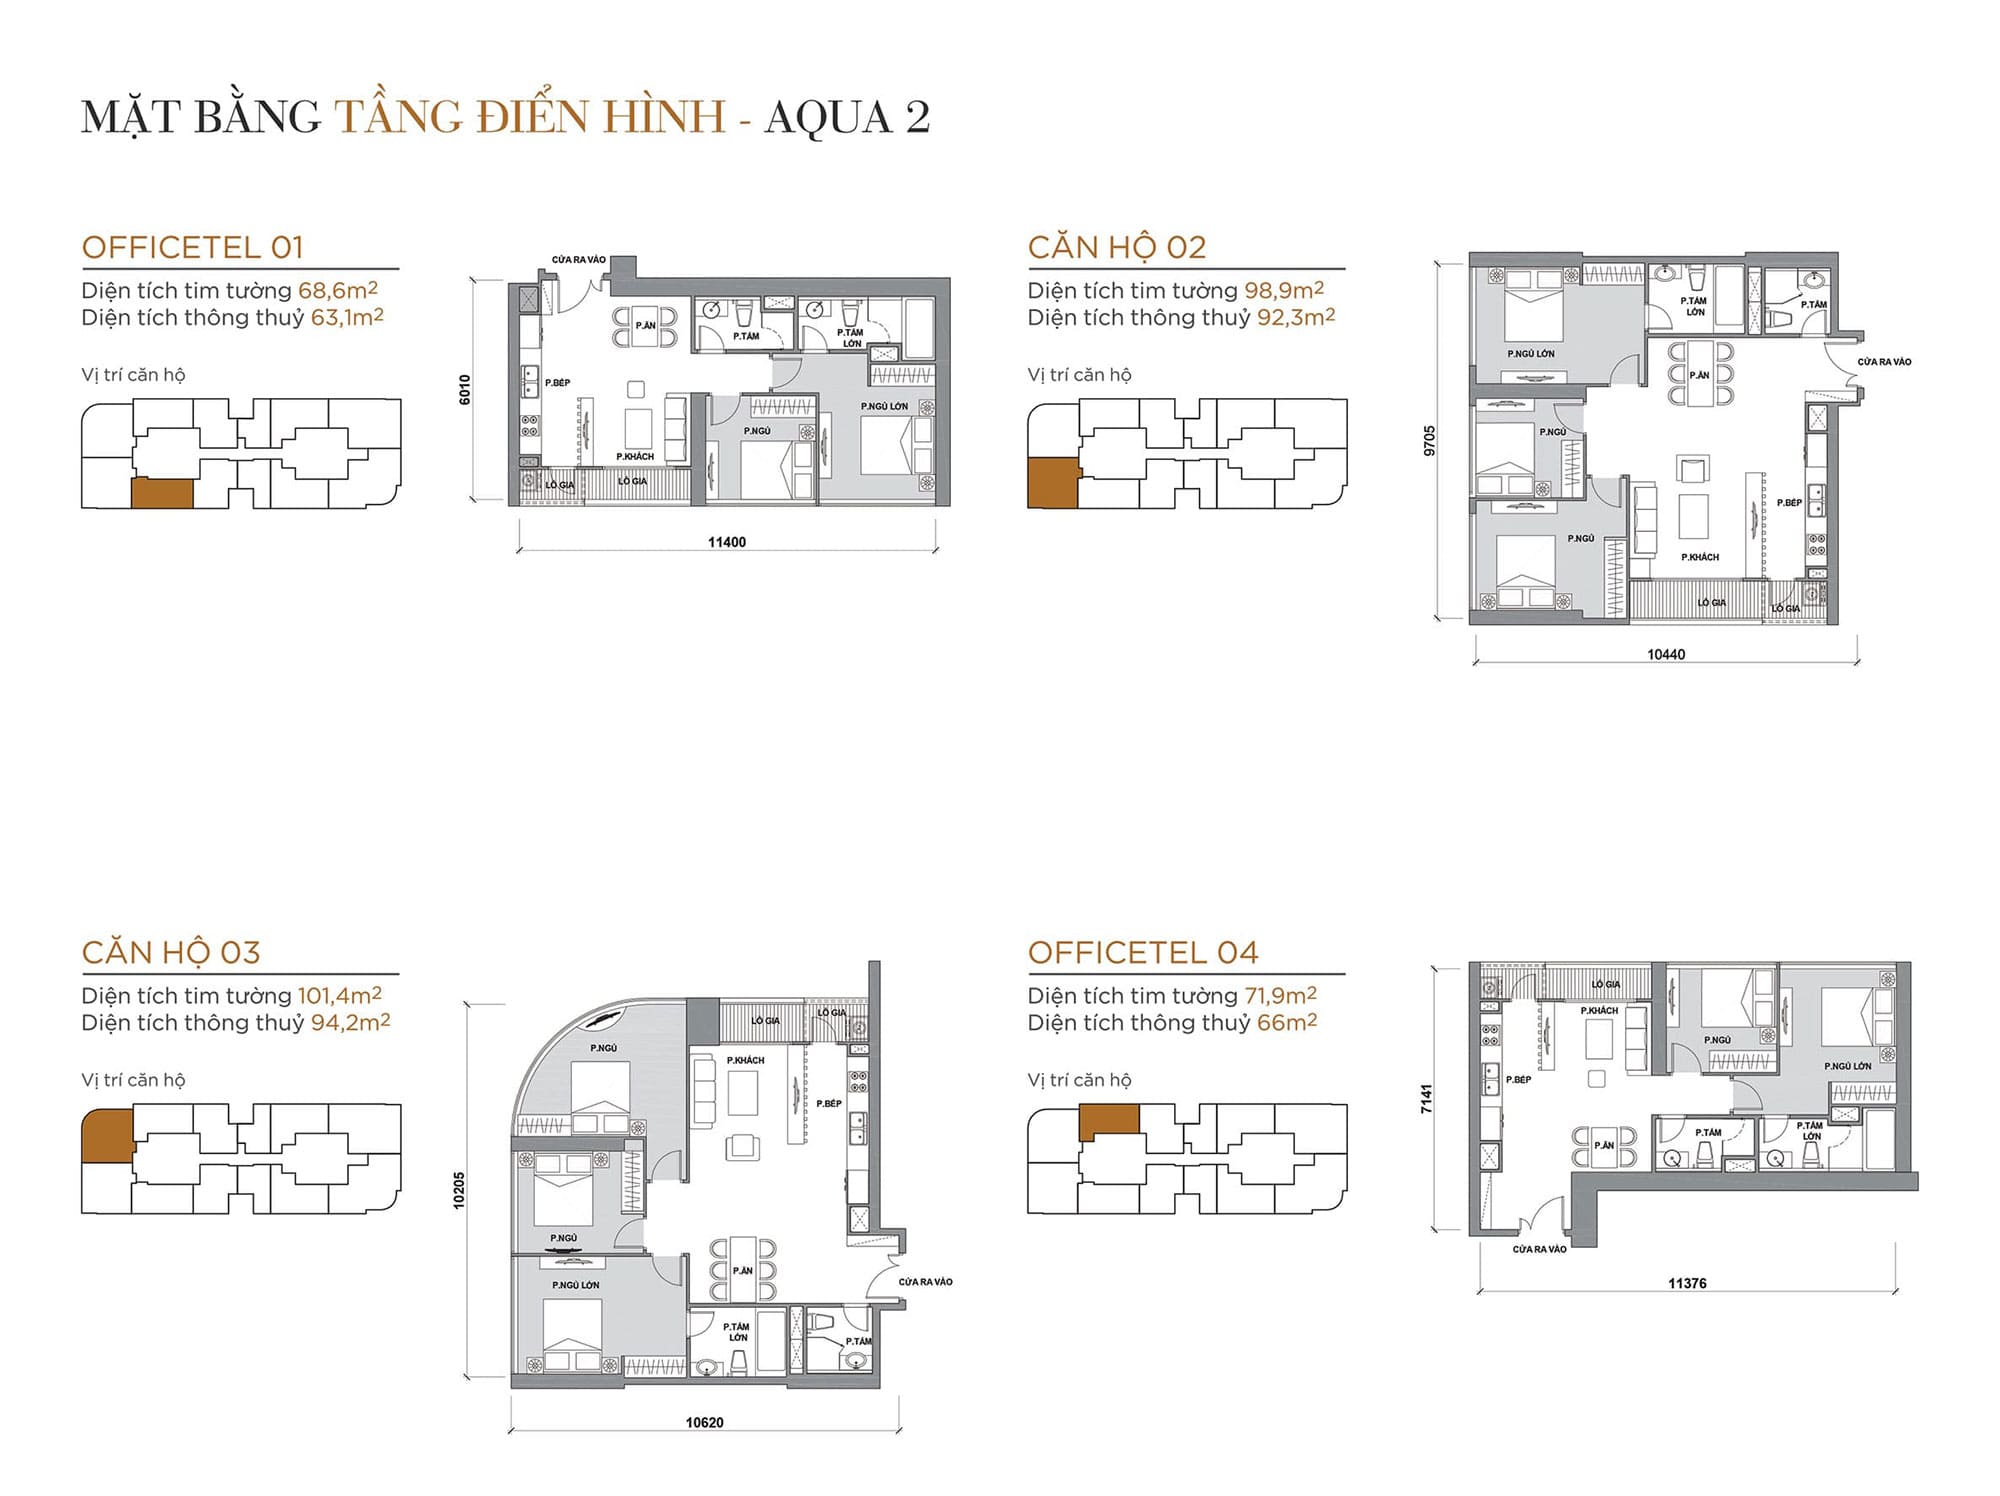 Layout căn hộ tầng điển hình tòa Aqua 2 loại Officetel 01, Căn hộ 02, Căn hộ 03, Officetel 04.